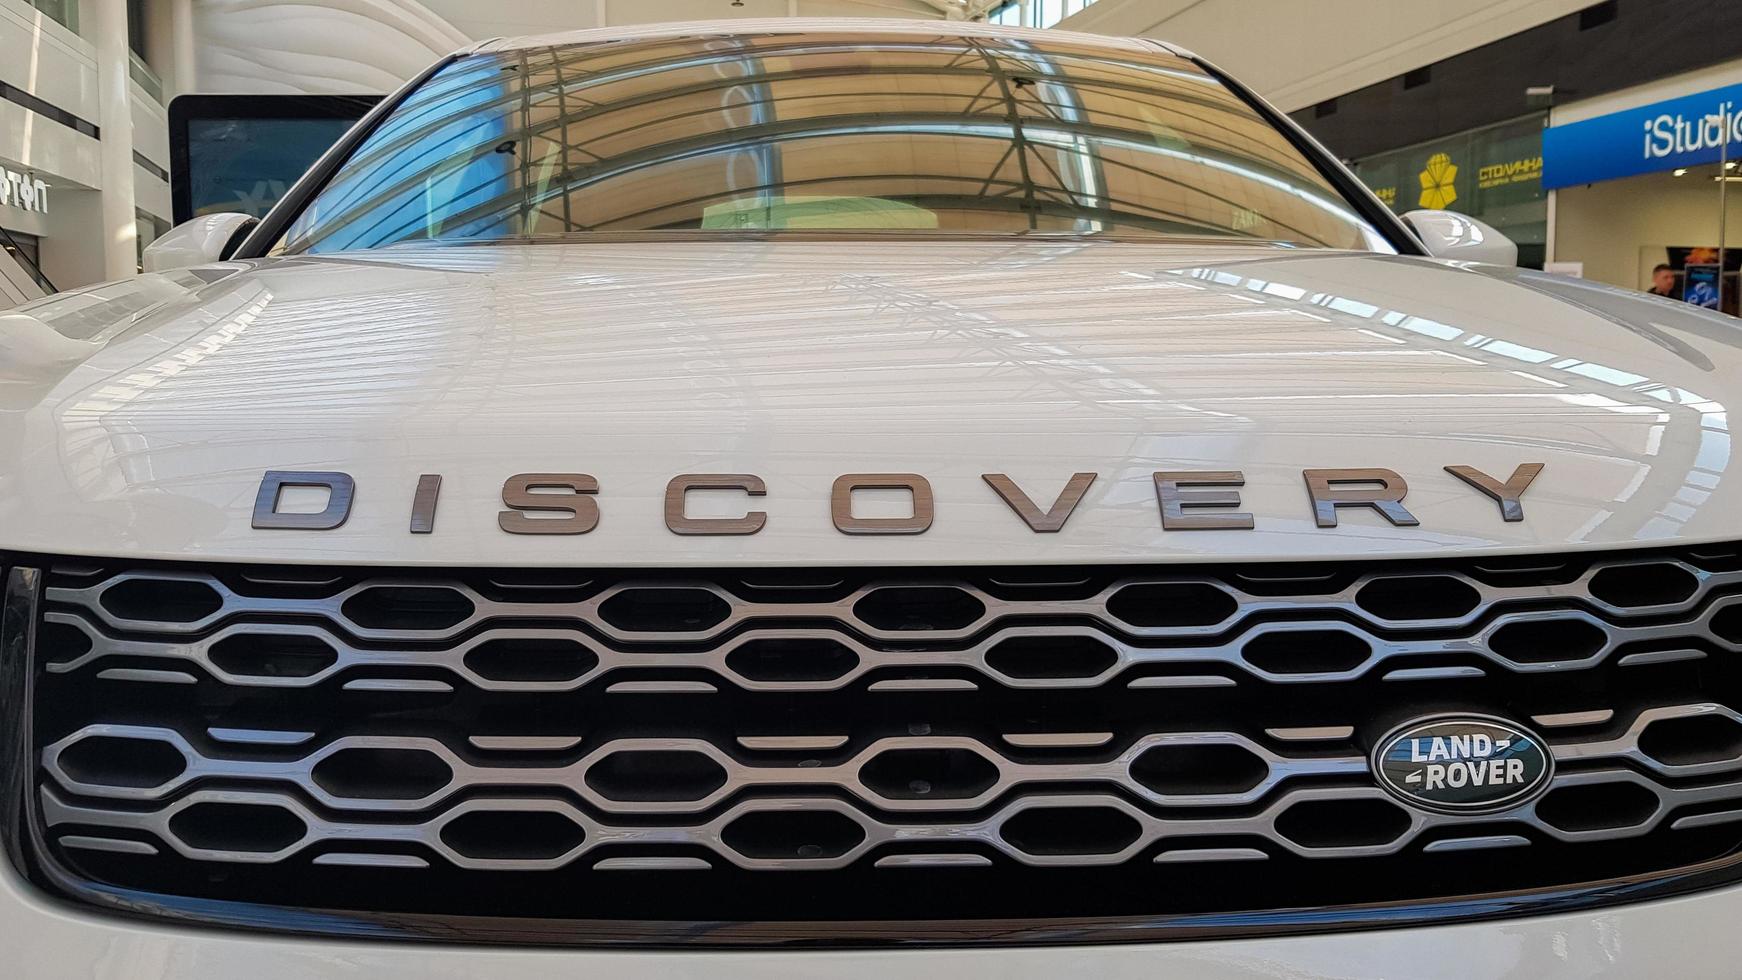 oekraïne, kiev - 27 maart 2020. land rover discovery sport glanzende moderne witte auto op de tentoonstelling. carrosserie, koplampen close-up, achter- en vooraanzicht, chromen grille, auto-logo. foto